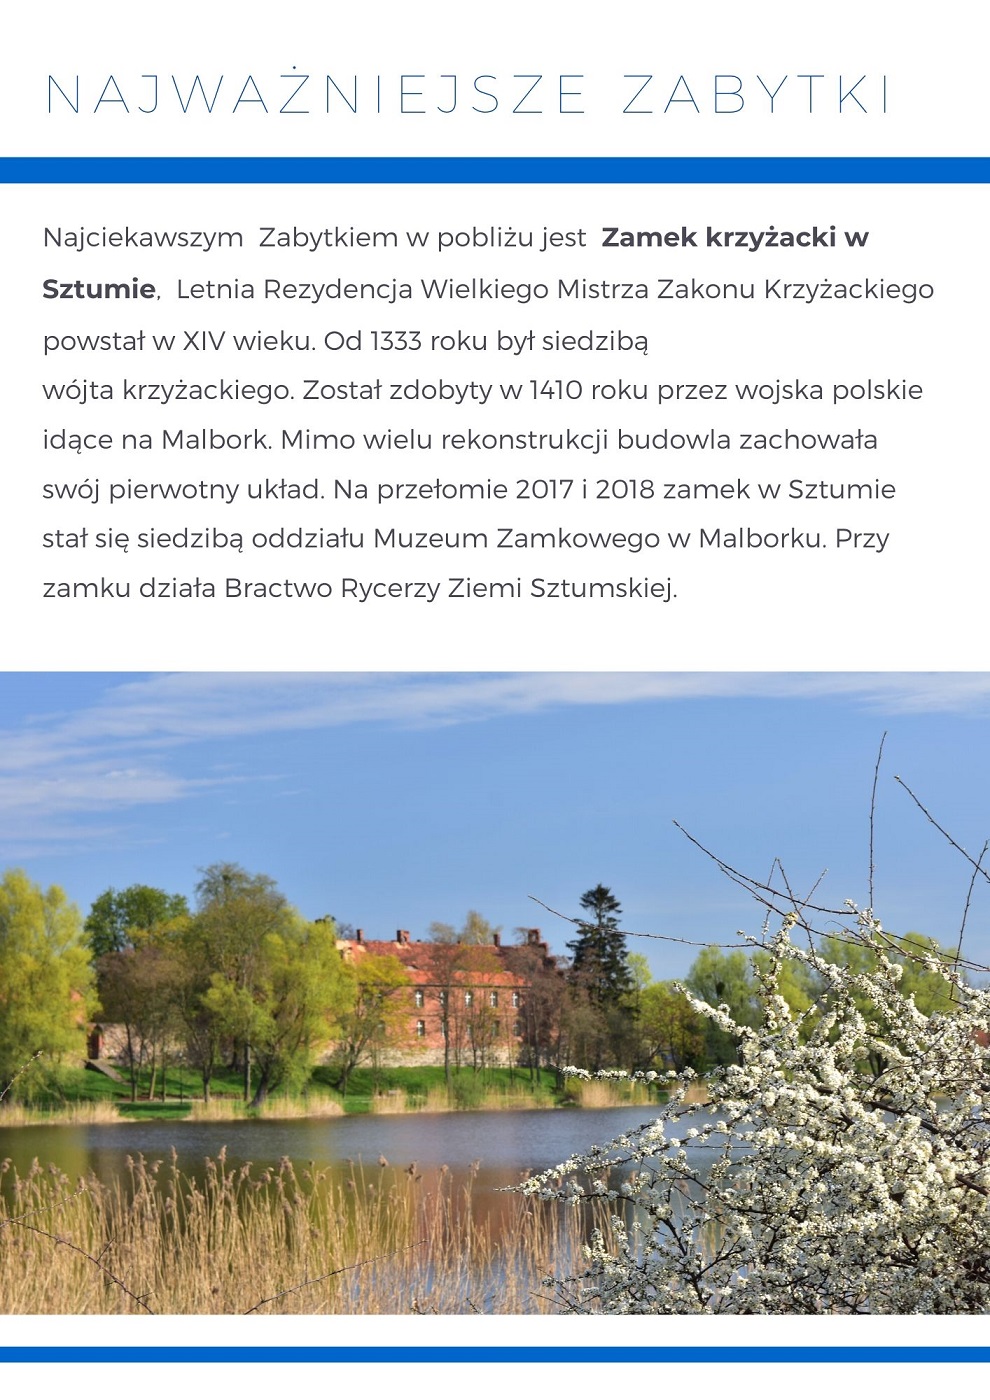 Grafika informująca o Ciekawych Miejscach - Jezioro Sztumskie